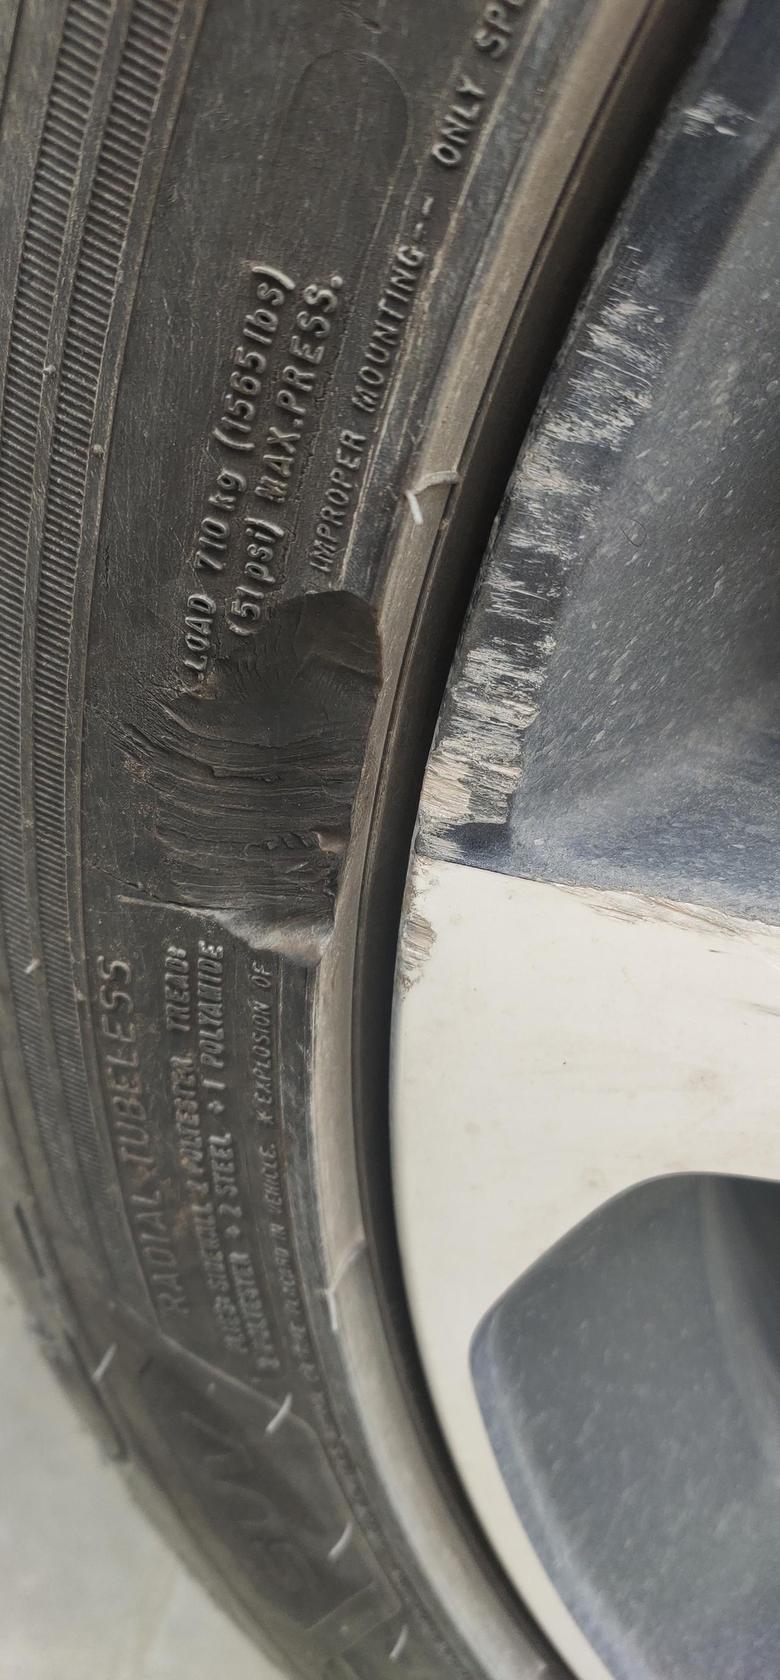 领克05 刚买的车，轮胎被刮了一块，有必要换原厂轮胎吗？